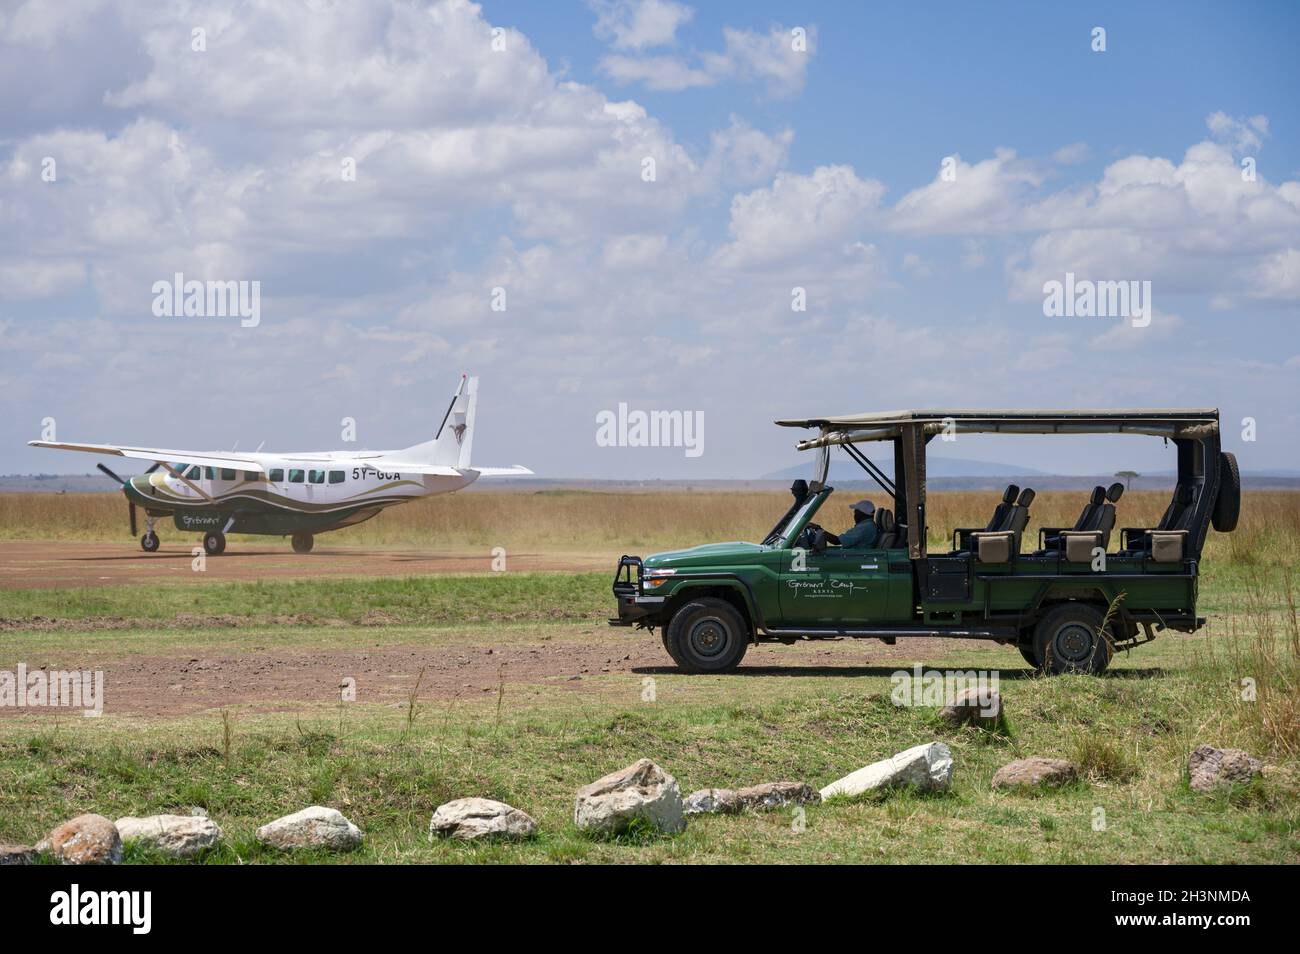 Le 4x4 Toyota Landcruiser safari véhicule attend comme un avion-taxi léger sur la piste d'atterrissage de Musiara, Masai Mara, Kenya Banque D'Images